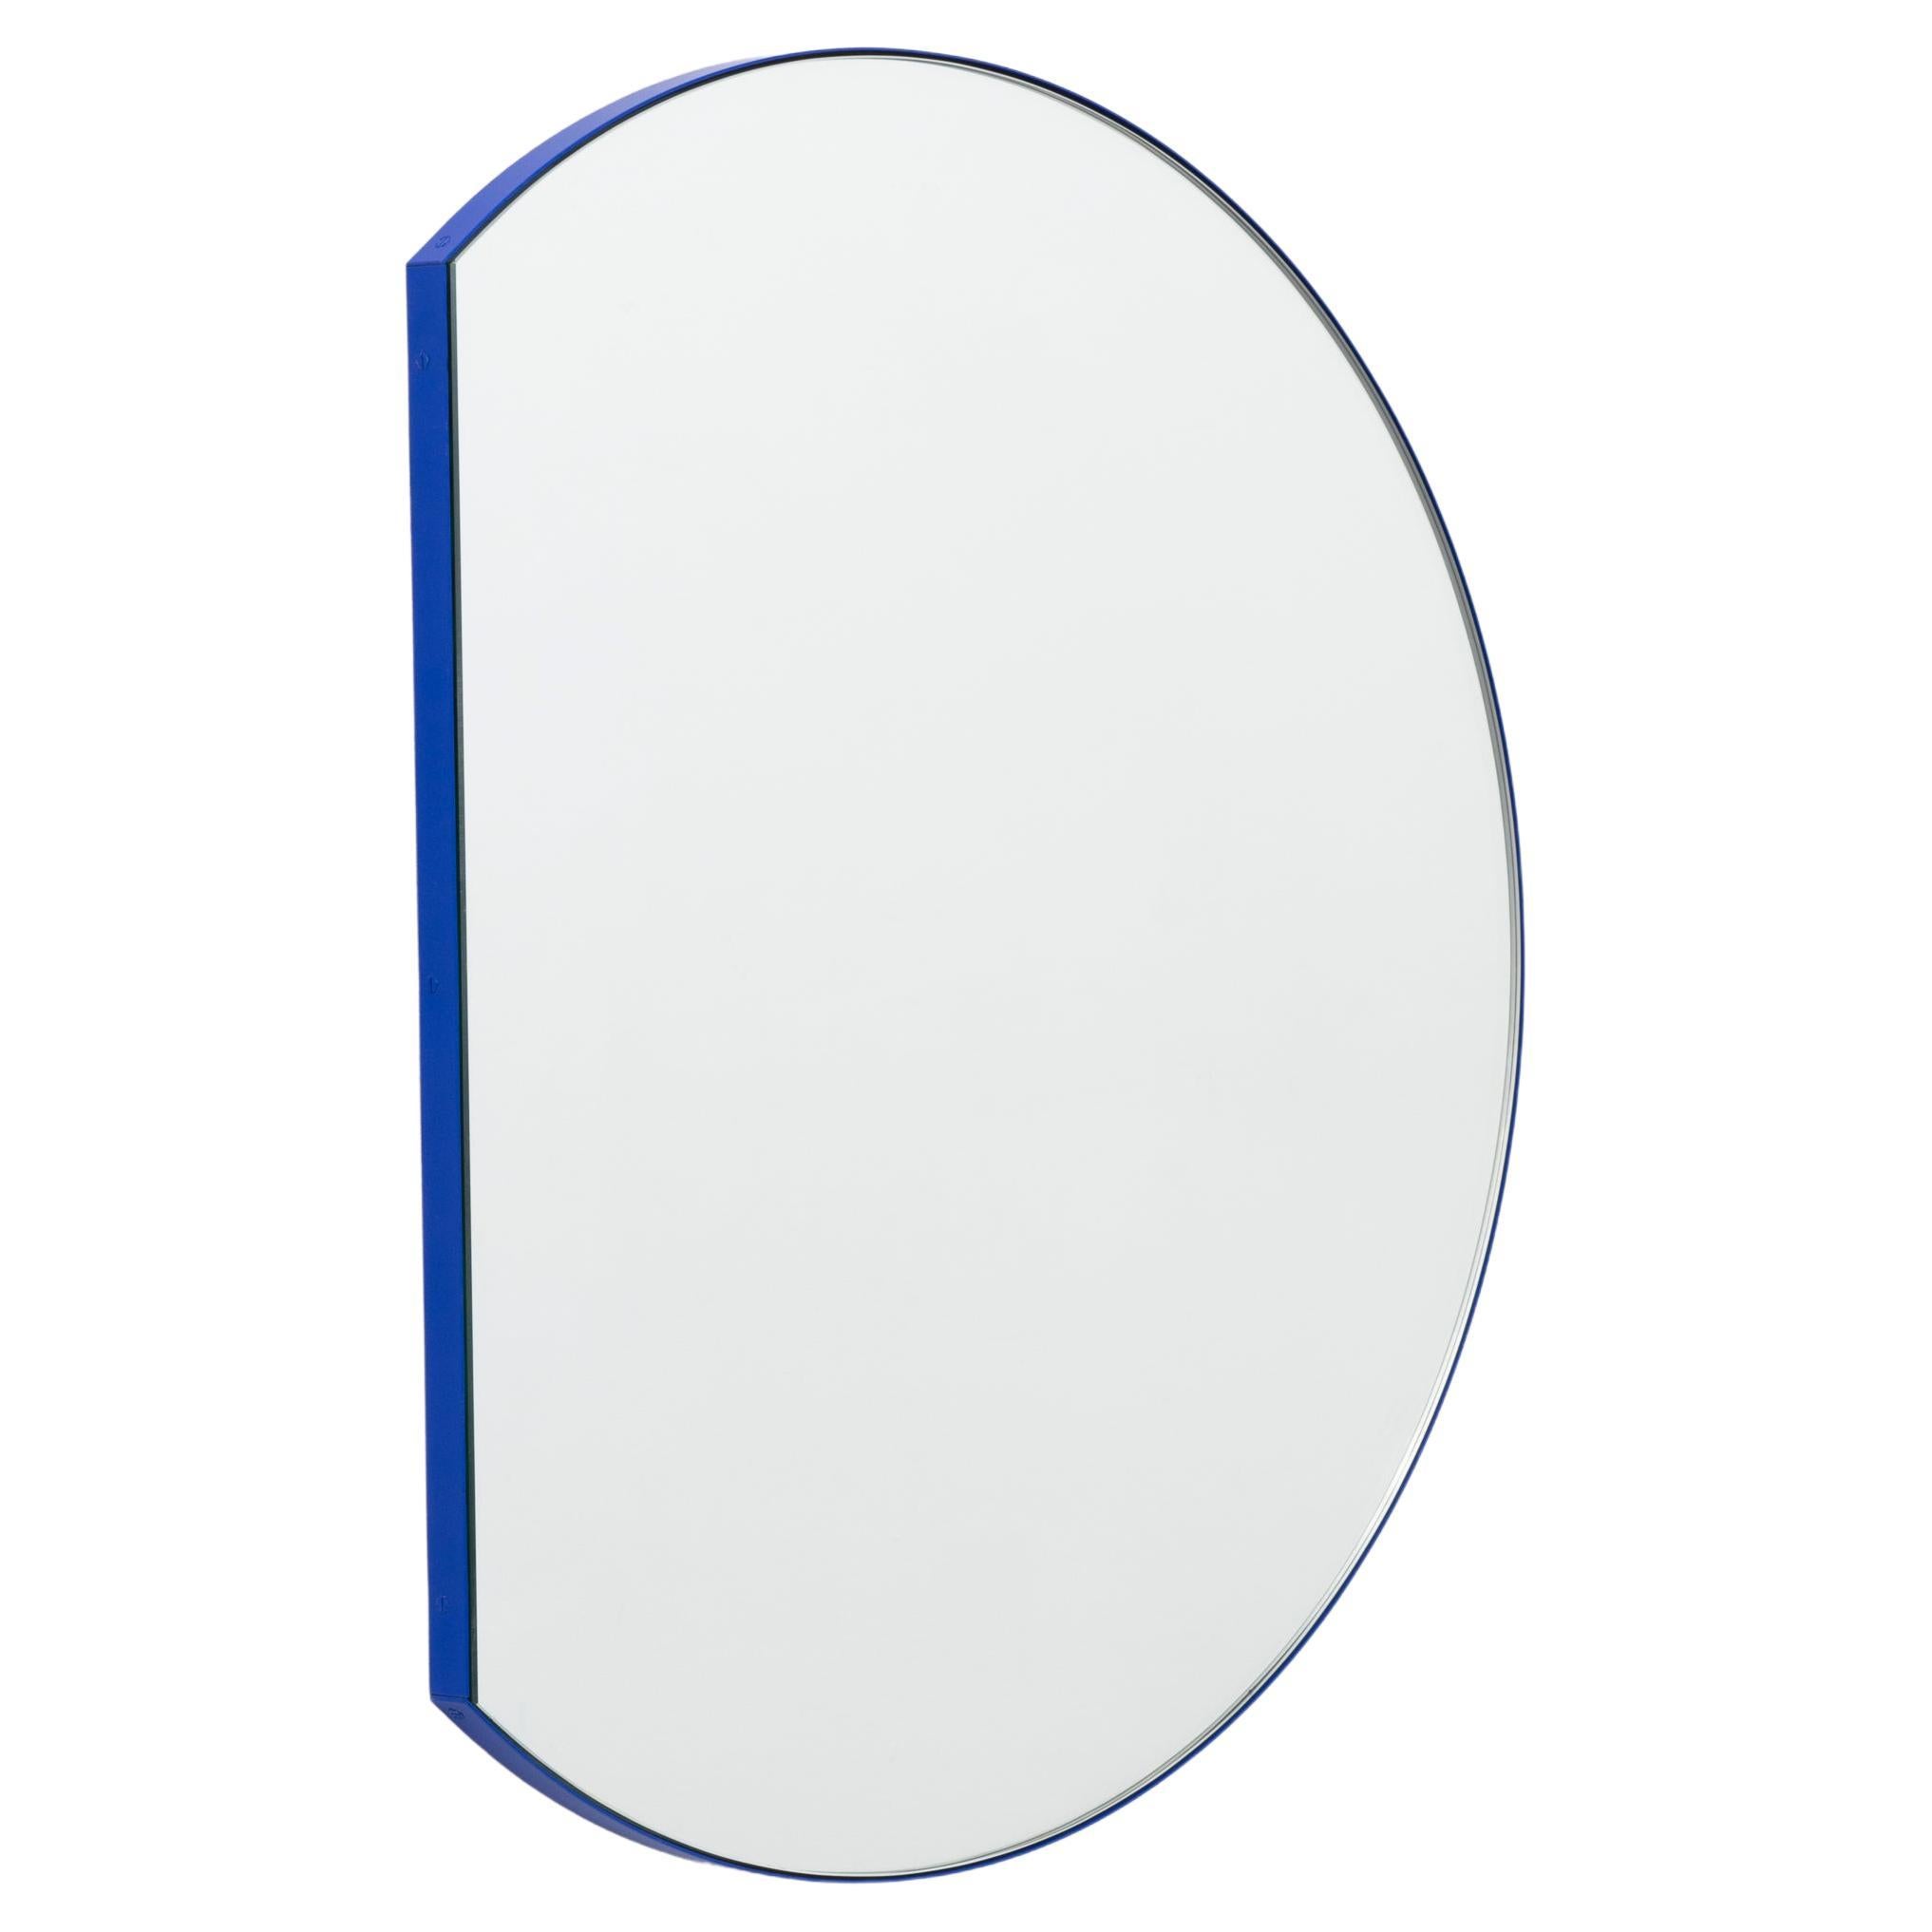 In Stock Orbis Trecus Cropped Round Modern Mirror, Blue Frame, Medium